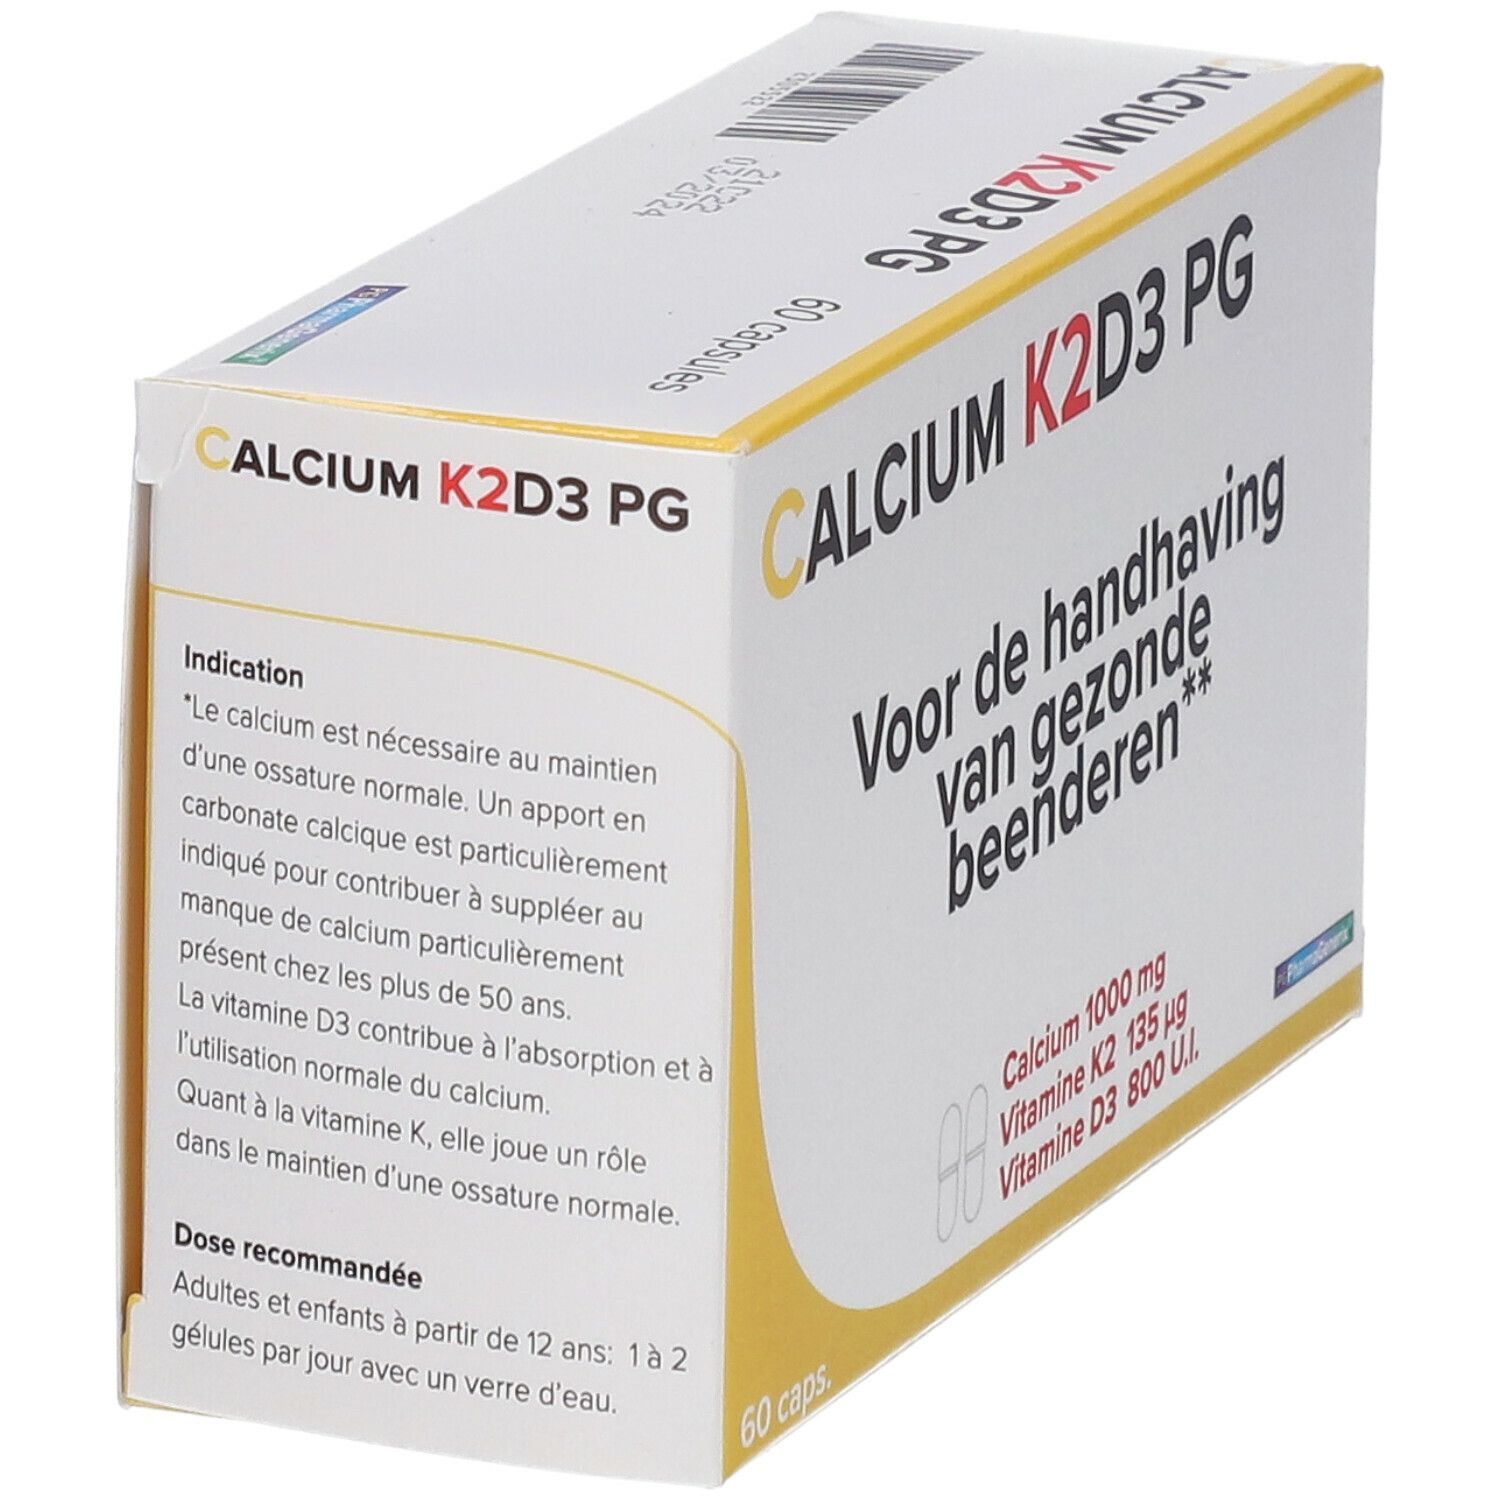 Pharmagenerix Calcium K2 D3 PG